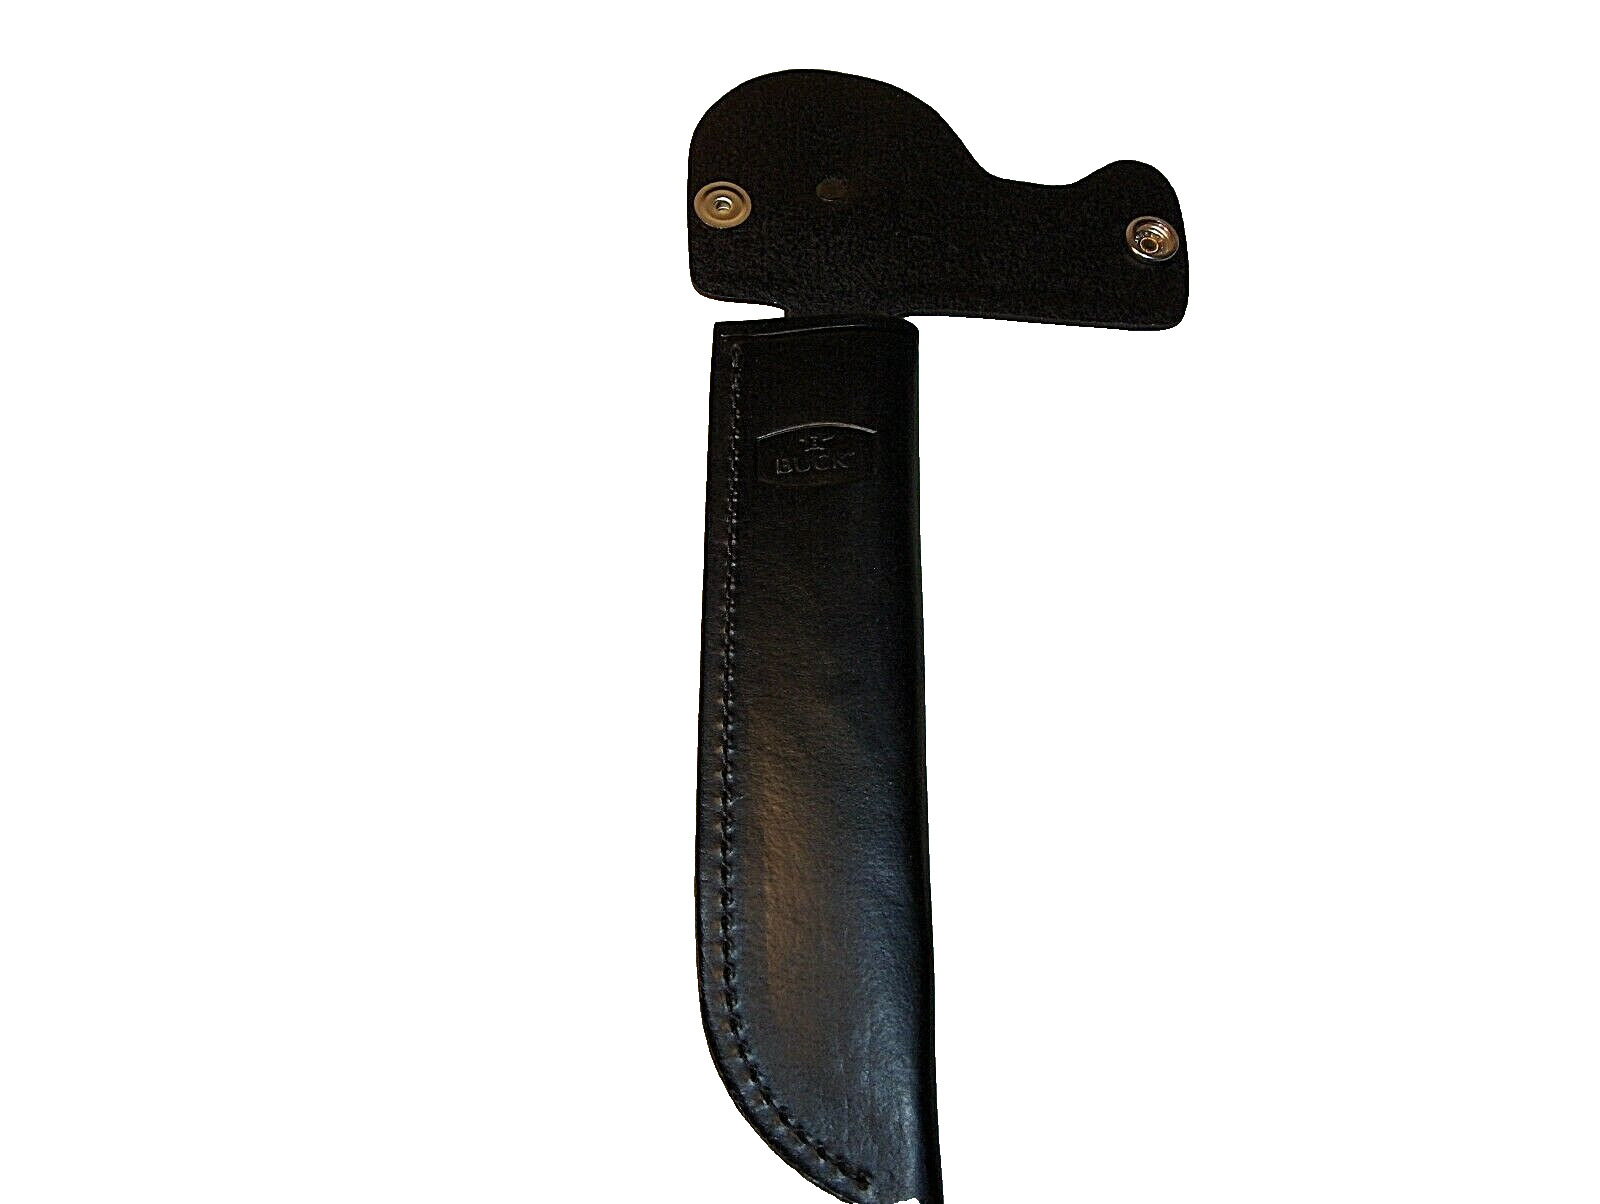 BUCK KNIFE MODEL # 120 GENERAL -  LEATHER BELT SHEATH -- BLACK WITH BUCK LOGO